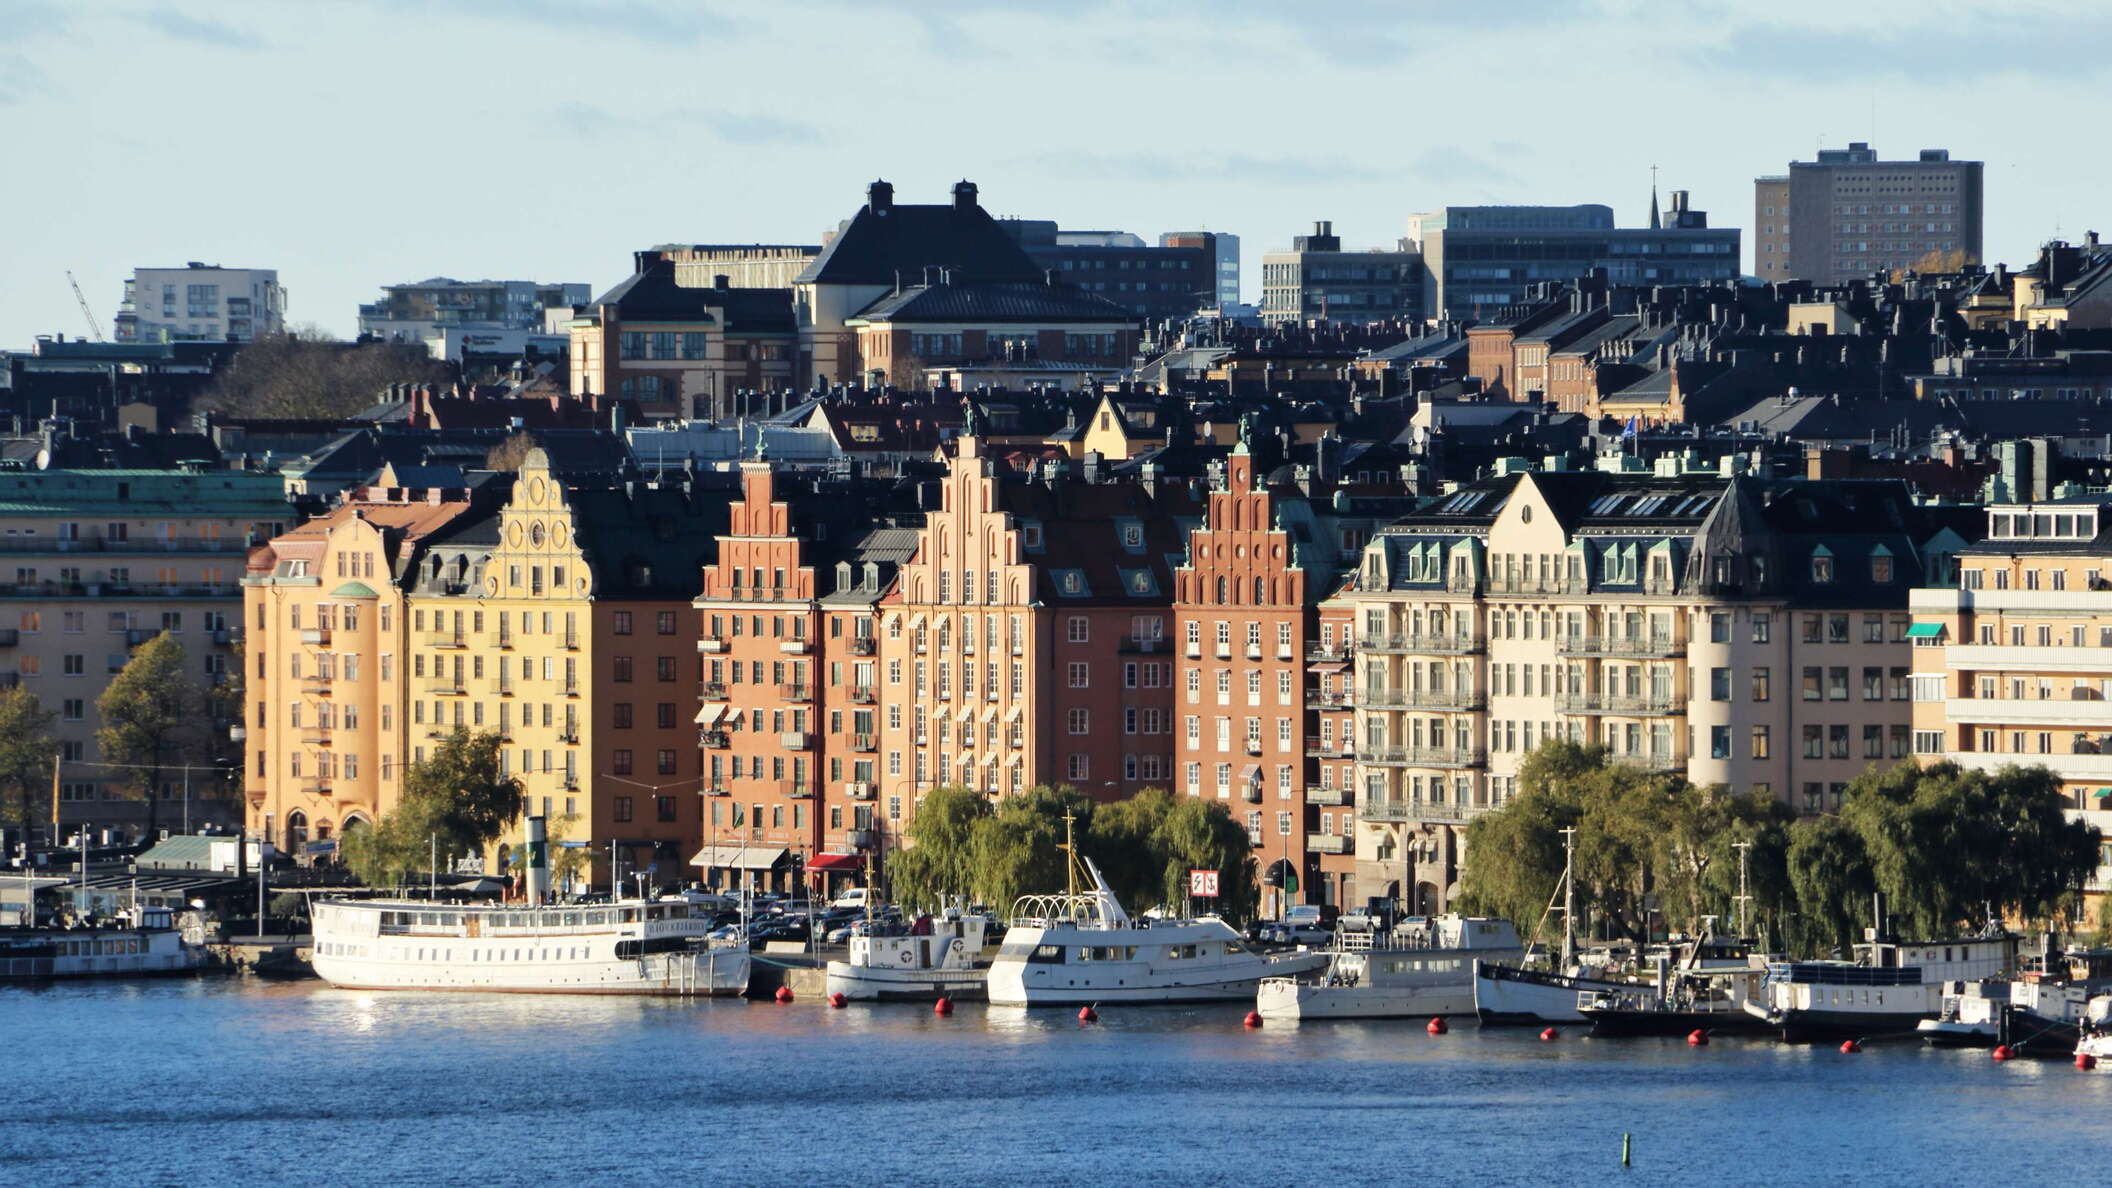 Stockholm | Kungsholmen